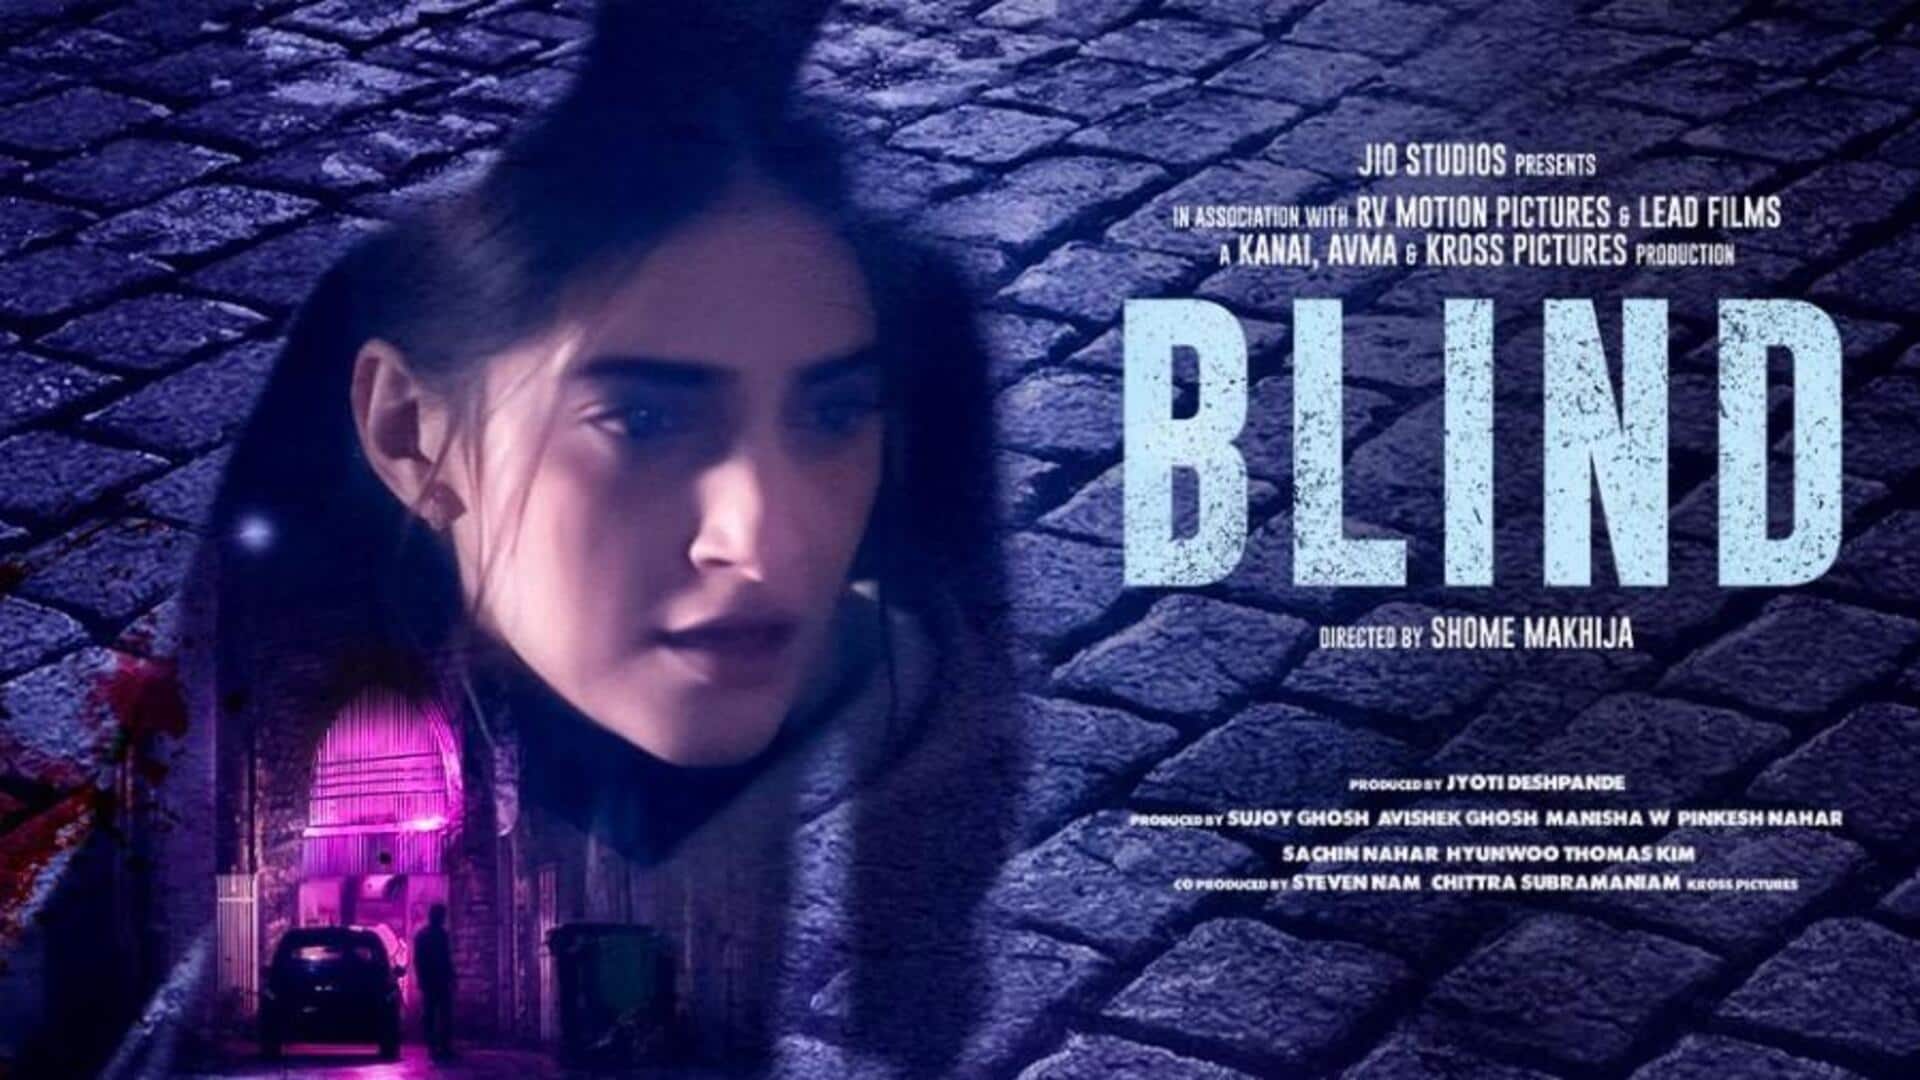 सोनम कपूर की 'ब्लाइंड' इस OTT प्लेटफॉर्म पर होगी रिलीज, जानिए कब देख सकेंगे फिल्म